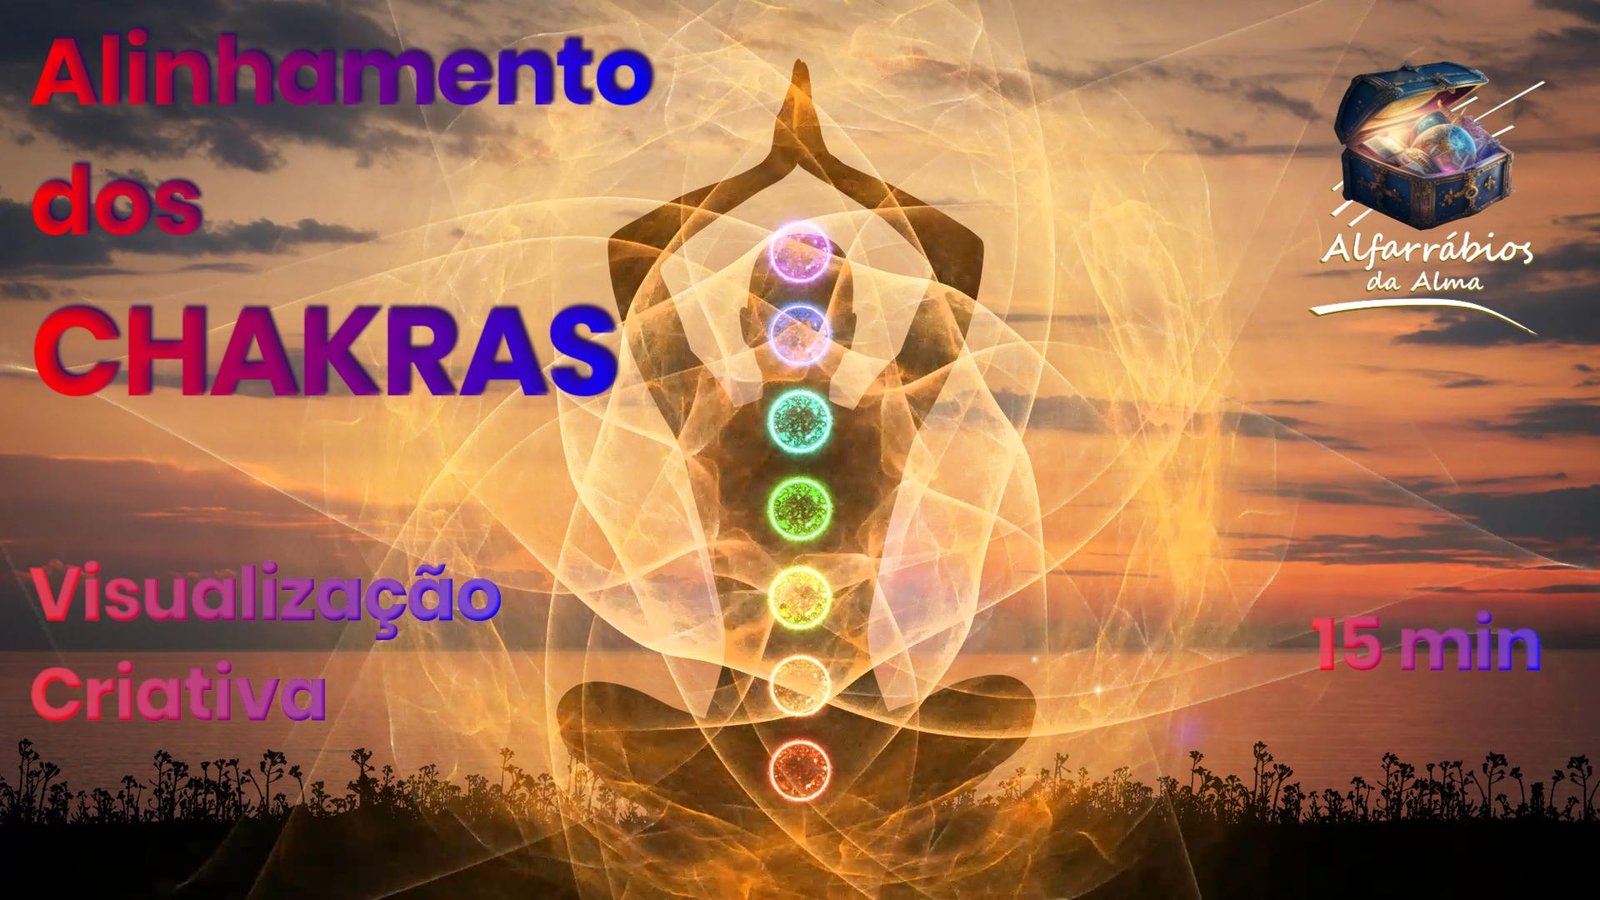 Alinhamento dos Chakras - Visualização Criativa - Meditação Guiada ©Alfarrábios da Alma, 2023